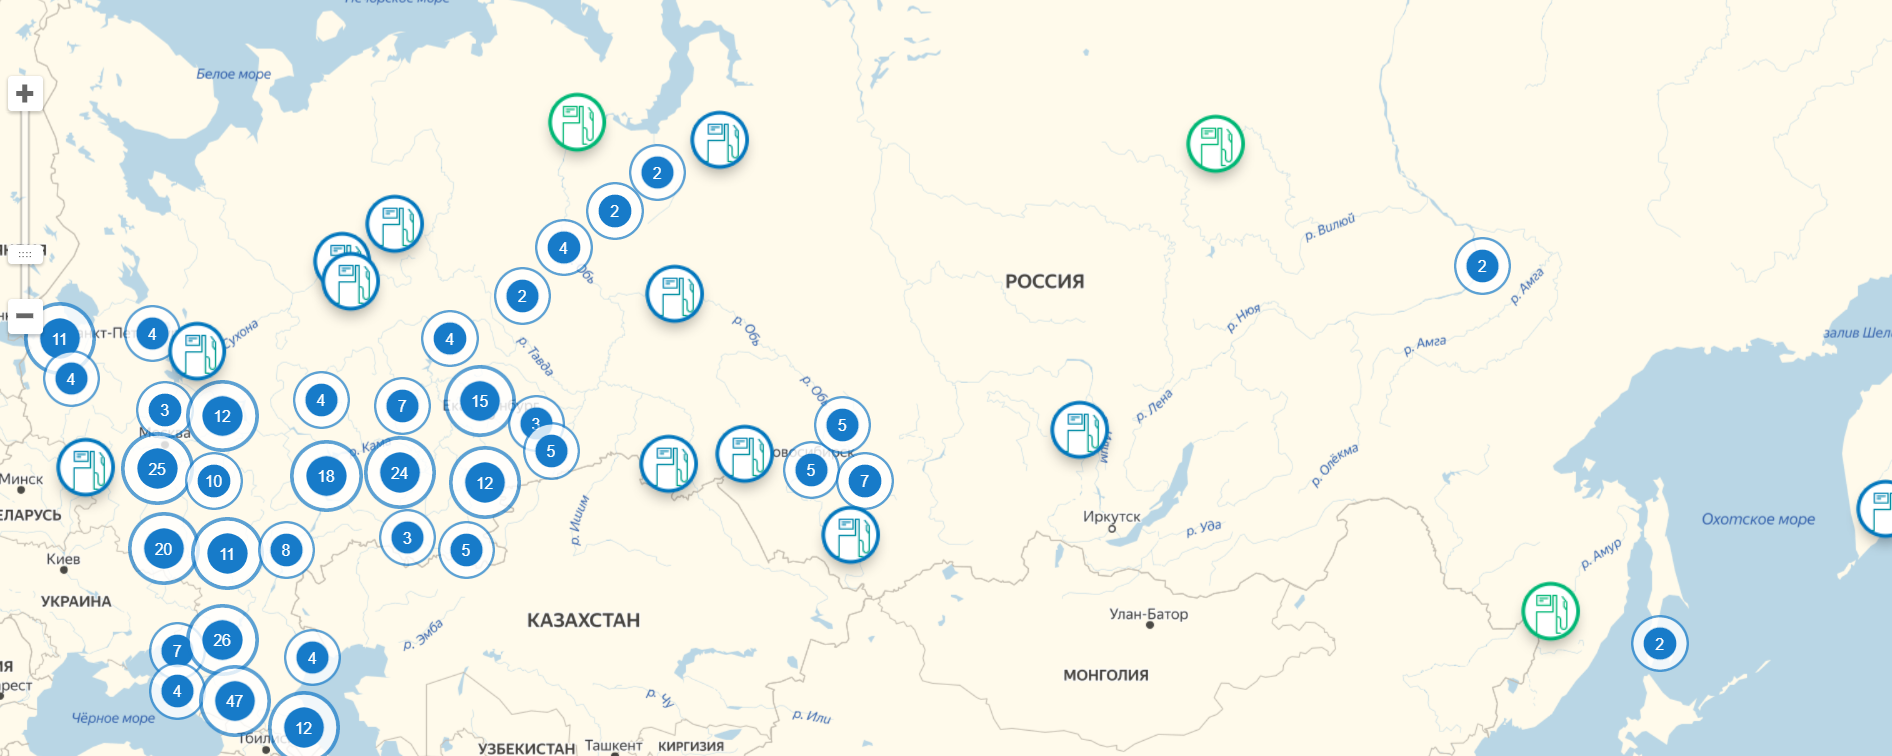 Заправка рядом со мной на карте ближайшая. Метановые заправки на карте России 2022 метан. Заправки метан на карте России 2021. Заправки СПГ В России на карте. Карта заправок АГНКС метан по России.